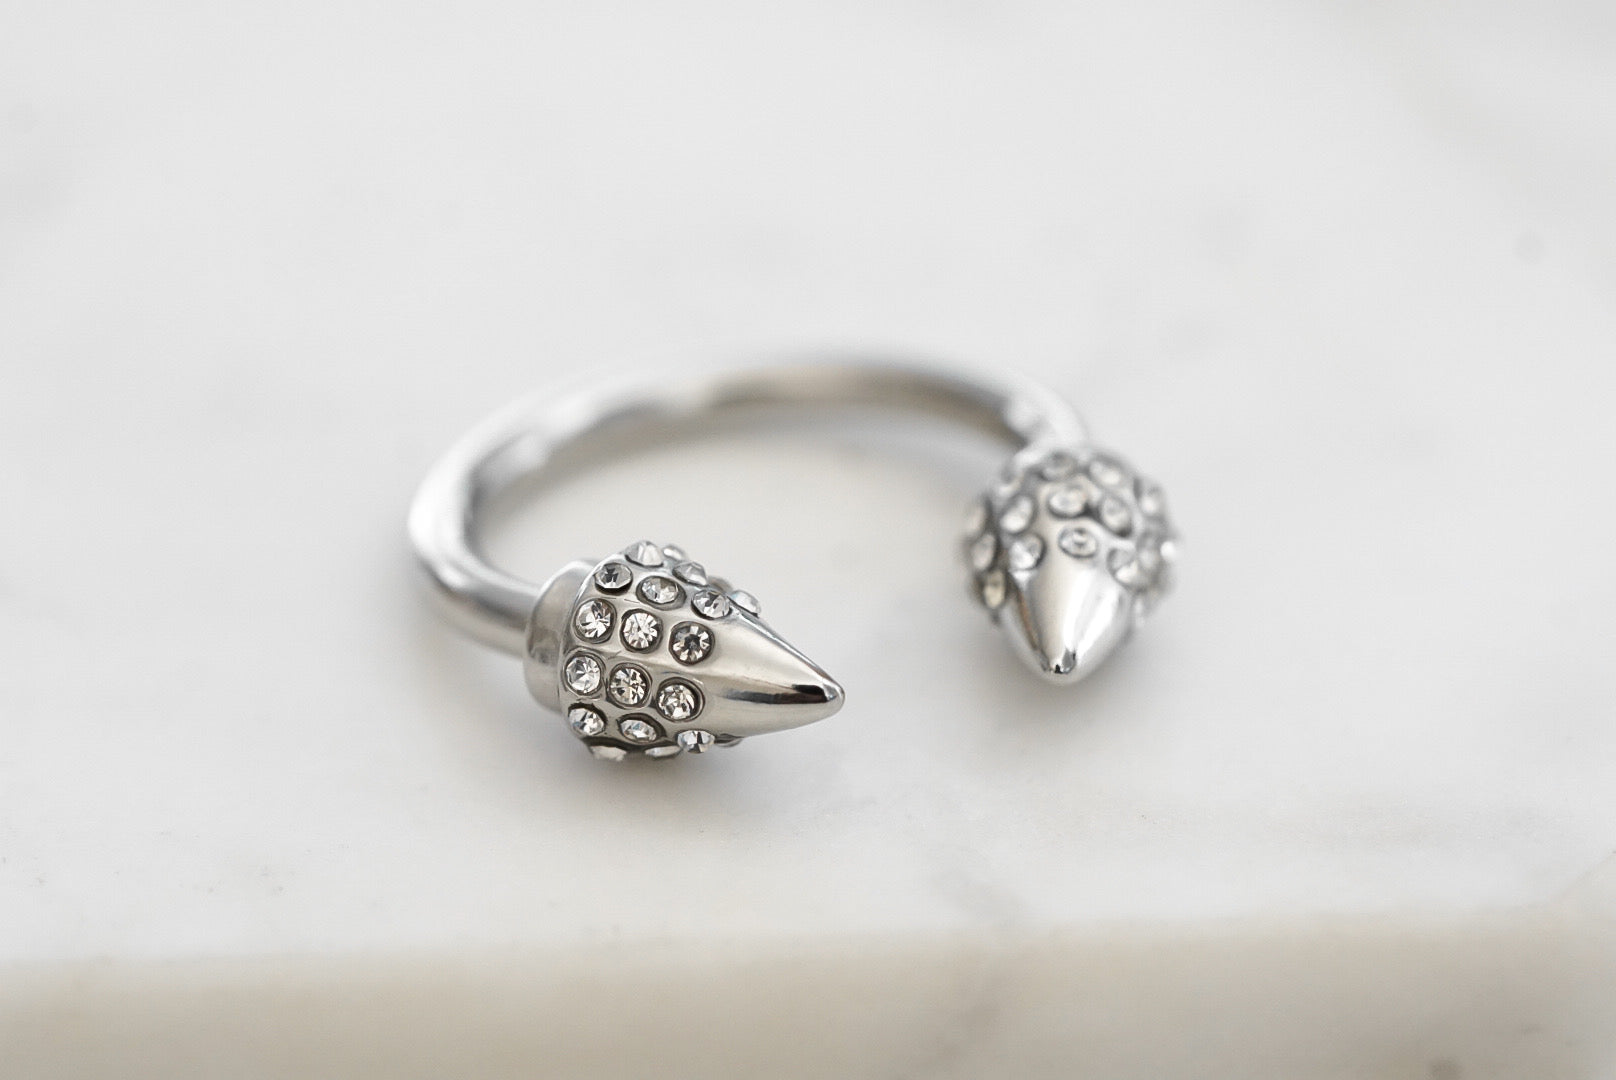 Colección Spike - Silver Bling Ring joyería fina de diseño para hombres y mujeres